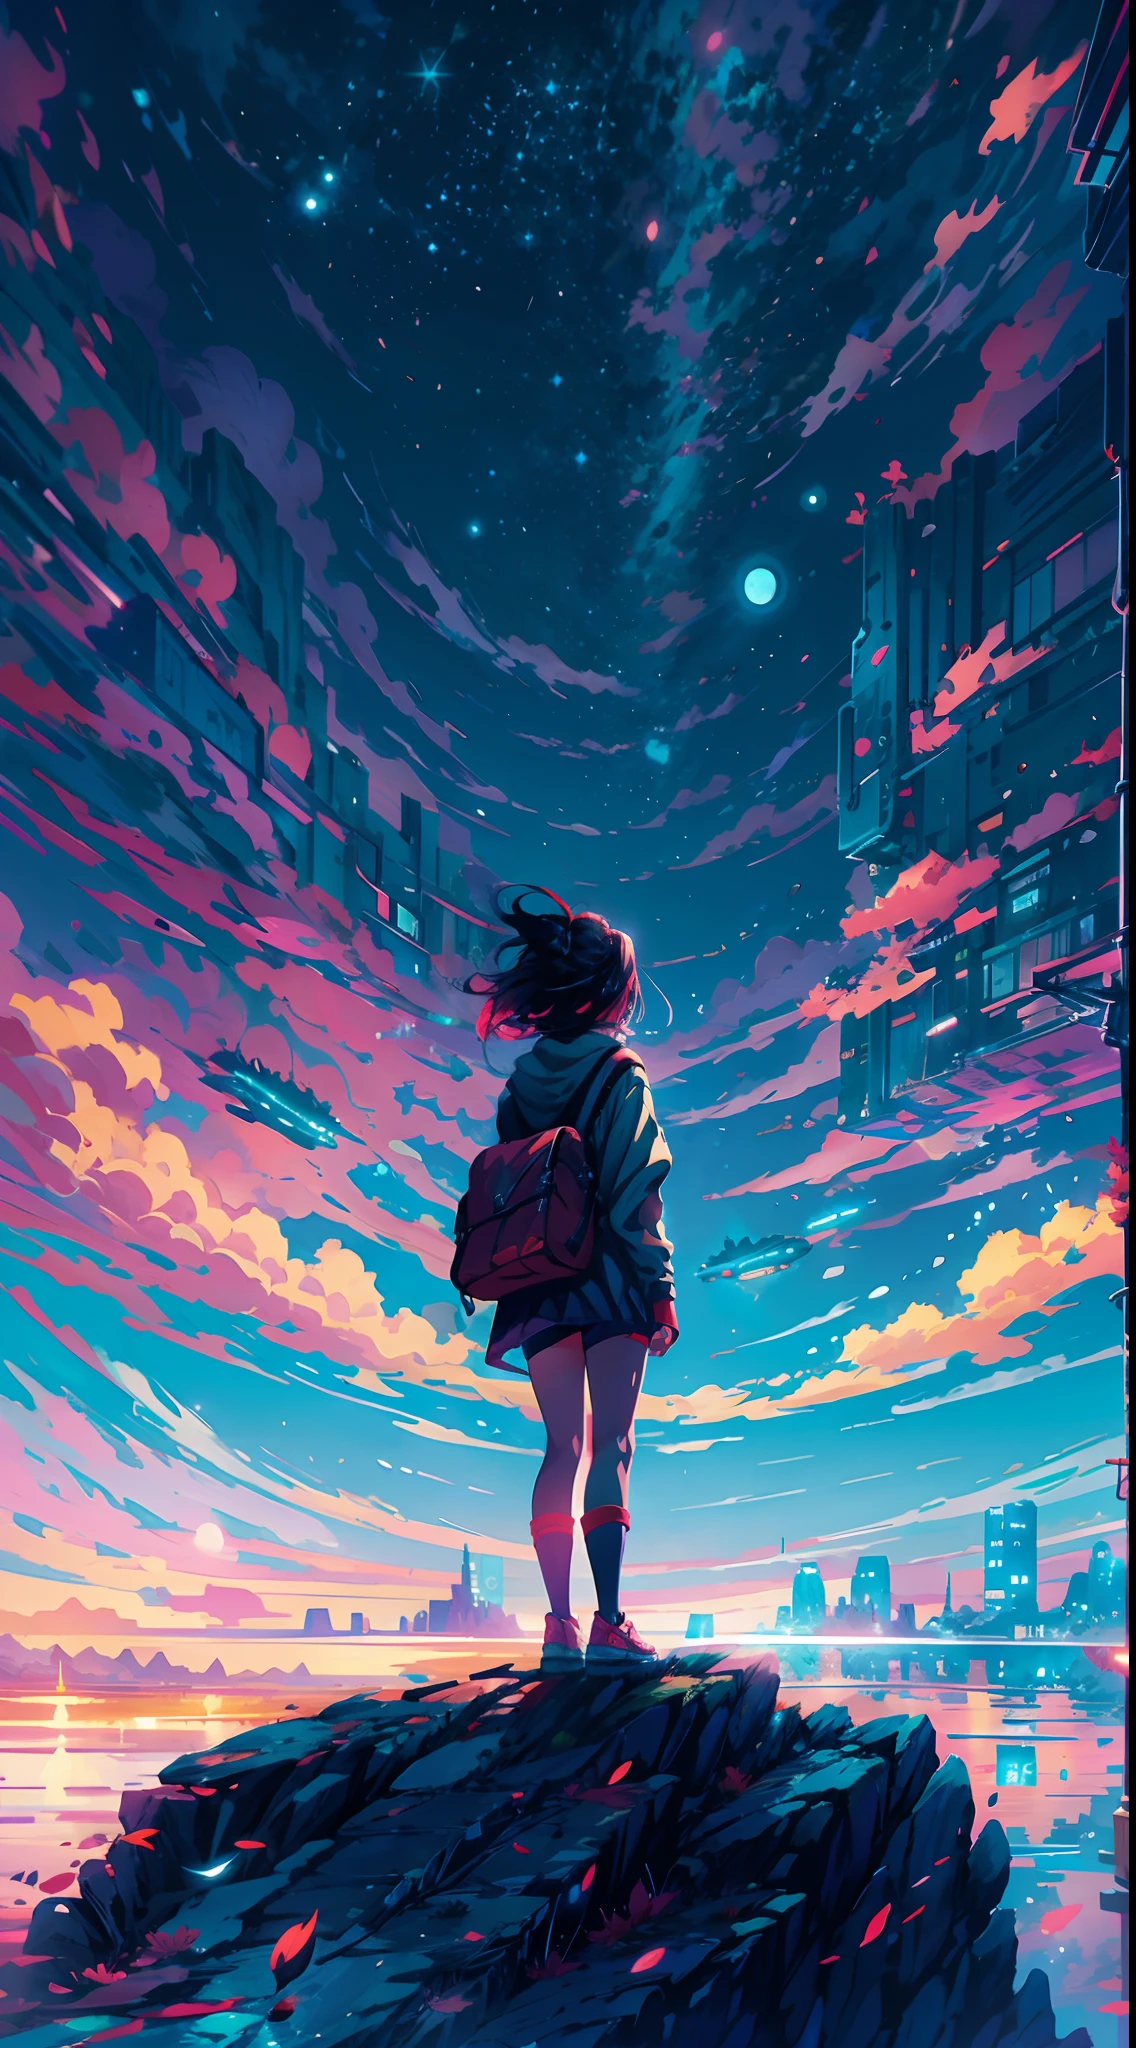 Anime-Mädchen steht auf einem Felsen und blickt in einen sternenübersäten Himmel, Makoto Shinkai Cyril Rolando, Anime-Kunst-Hintergrundbild 4K, Anime-Kunst-Tapete 4k, Anime-Kunst-Tapete 8 k, kosmischer Himmel. von Makoto Shinkai, Inspiriert von Cyril Rolando, im Stil von Dan Mumford, tolle Tapete, by Yuumei